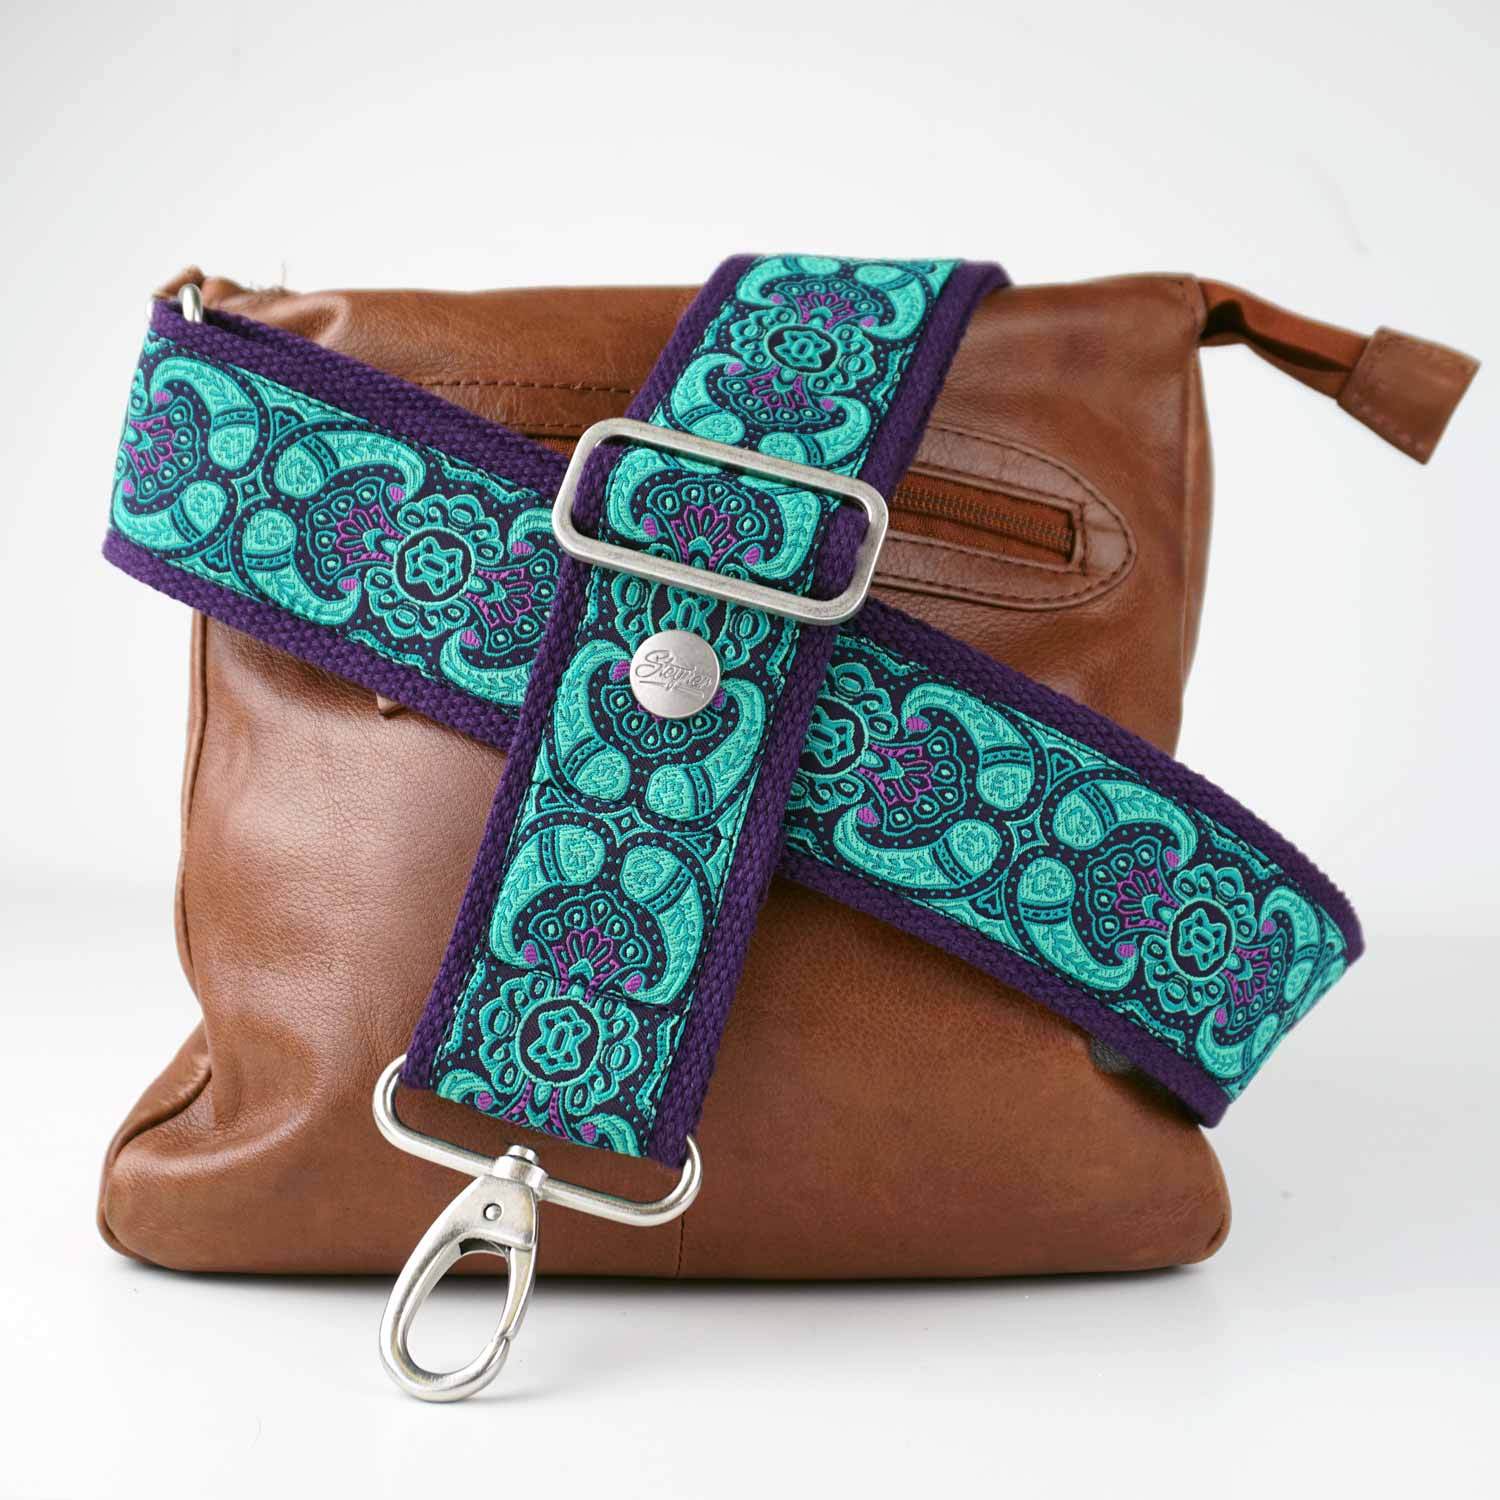 Taschengurt lila mint mit Karabiner - Schulterriemen / Schultergurt bunt mit orientalischem Blumen Paisley Muster an einer Cross Body Bag